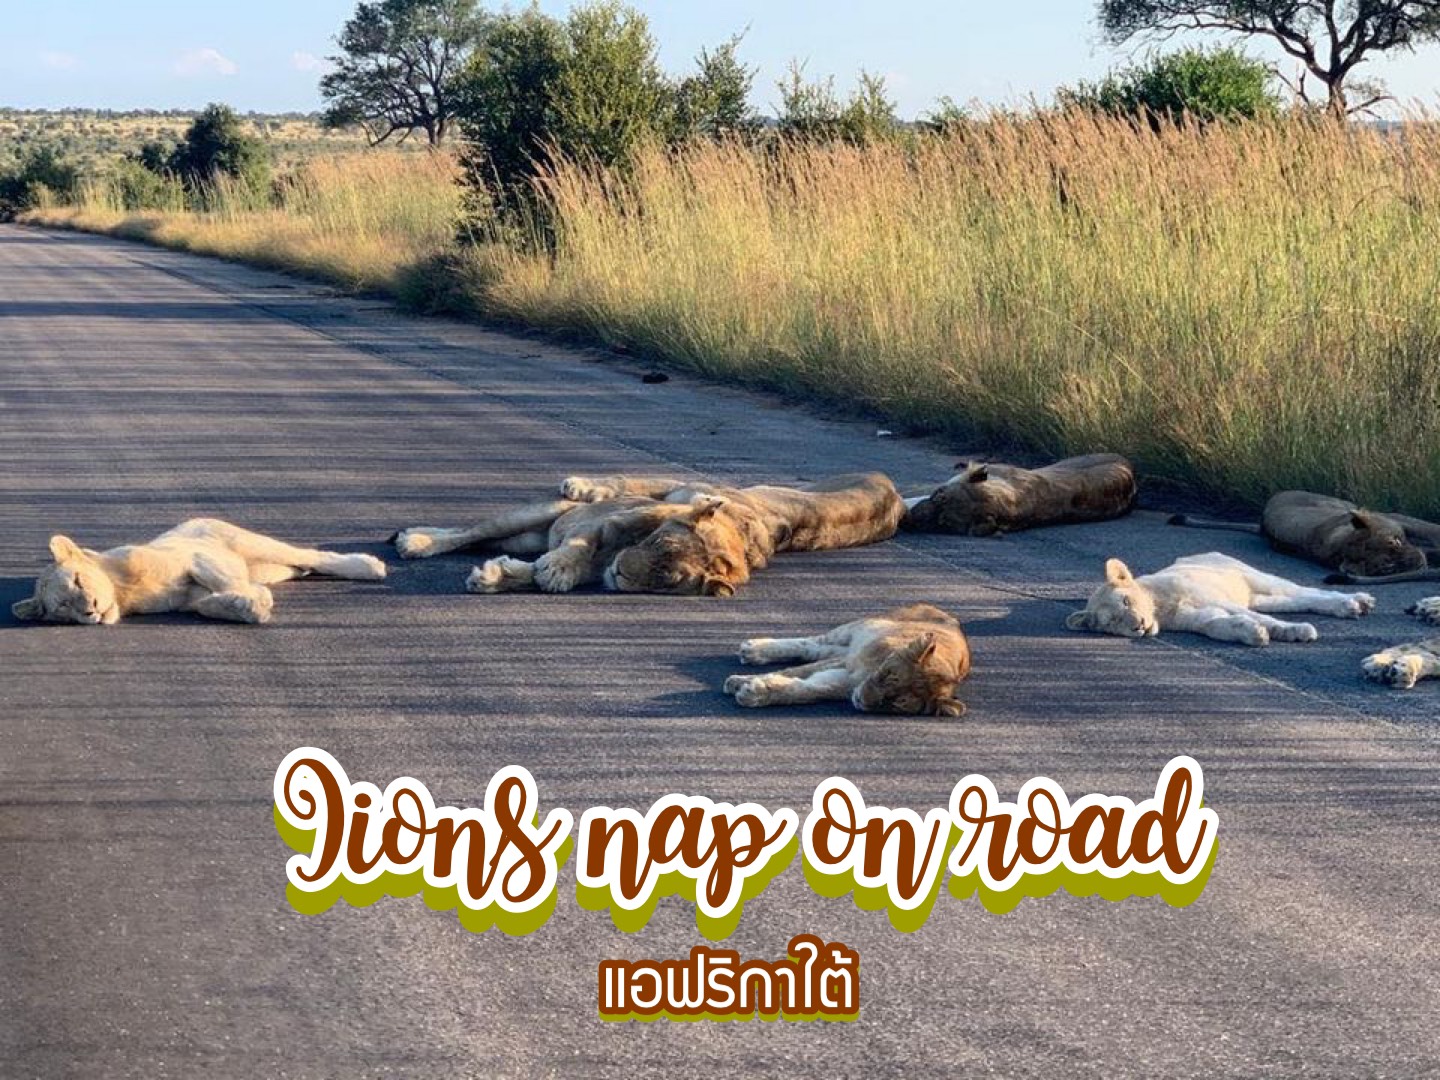 เหล่าสิงโตนอนหลับกลางถนน อุทยานแห่งชาติ Kruger National Park แอฟริกาใต้